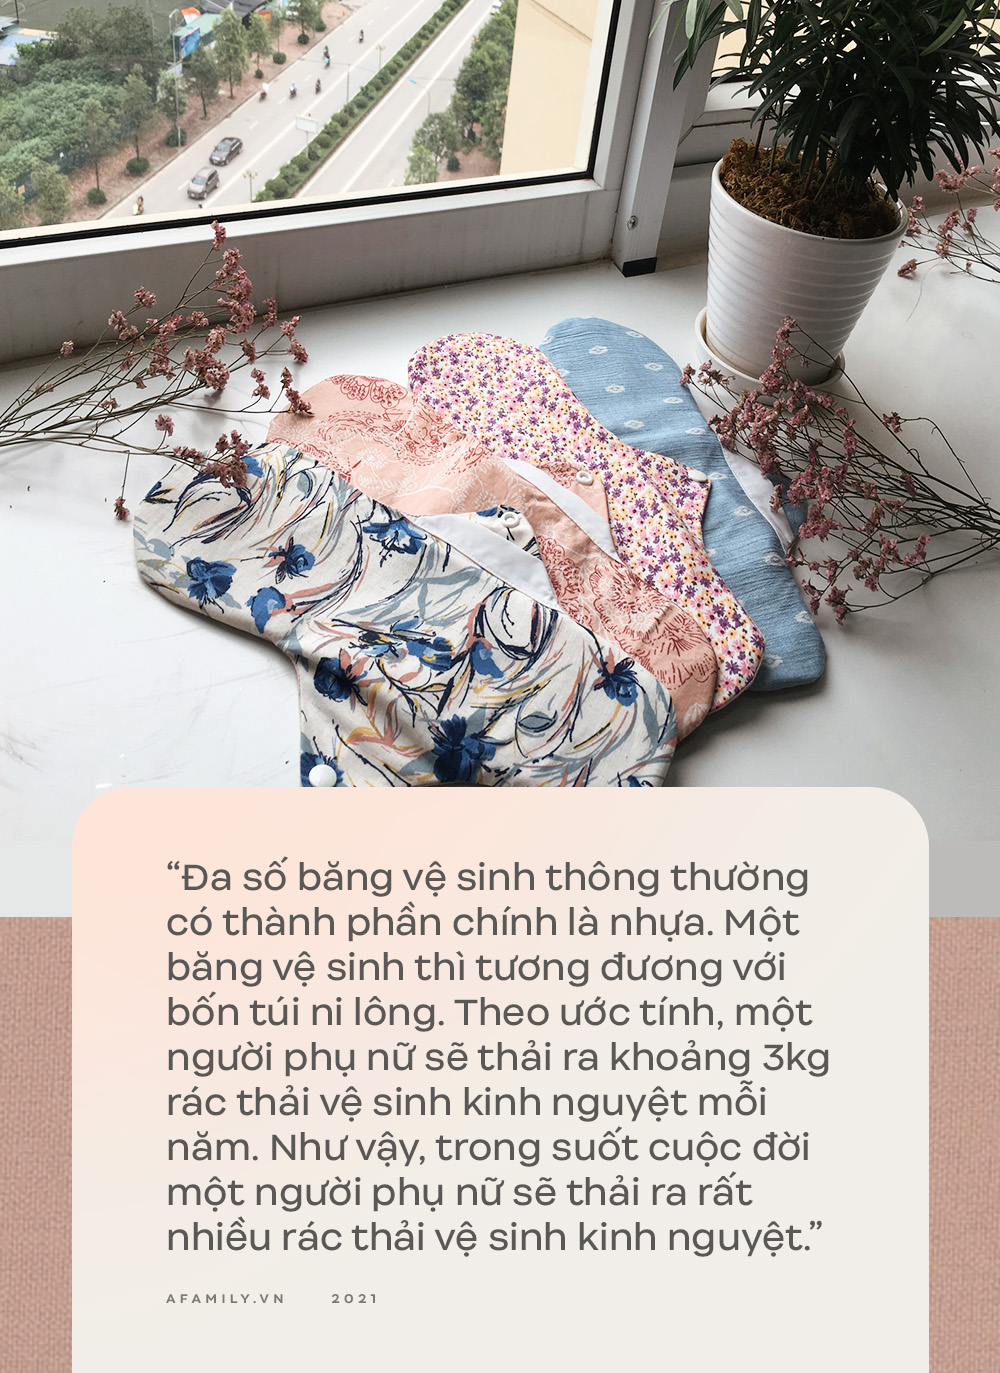 9X học Ngoại Thương khởi nghiệp bằng băng vệ sinh vải, sản phẩm khiến chị em e ngại nhưng lại có nhiều lợi ích bất ngờ - Ảnh 9.